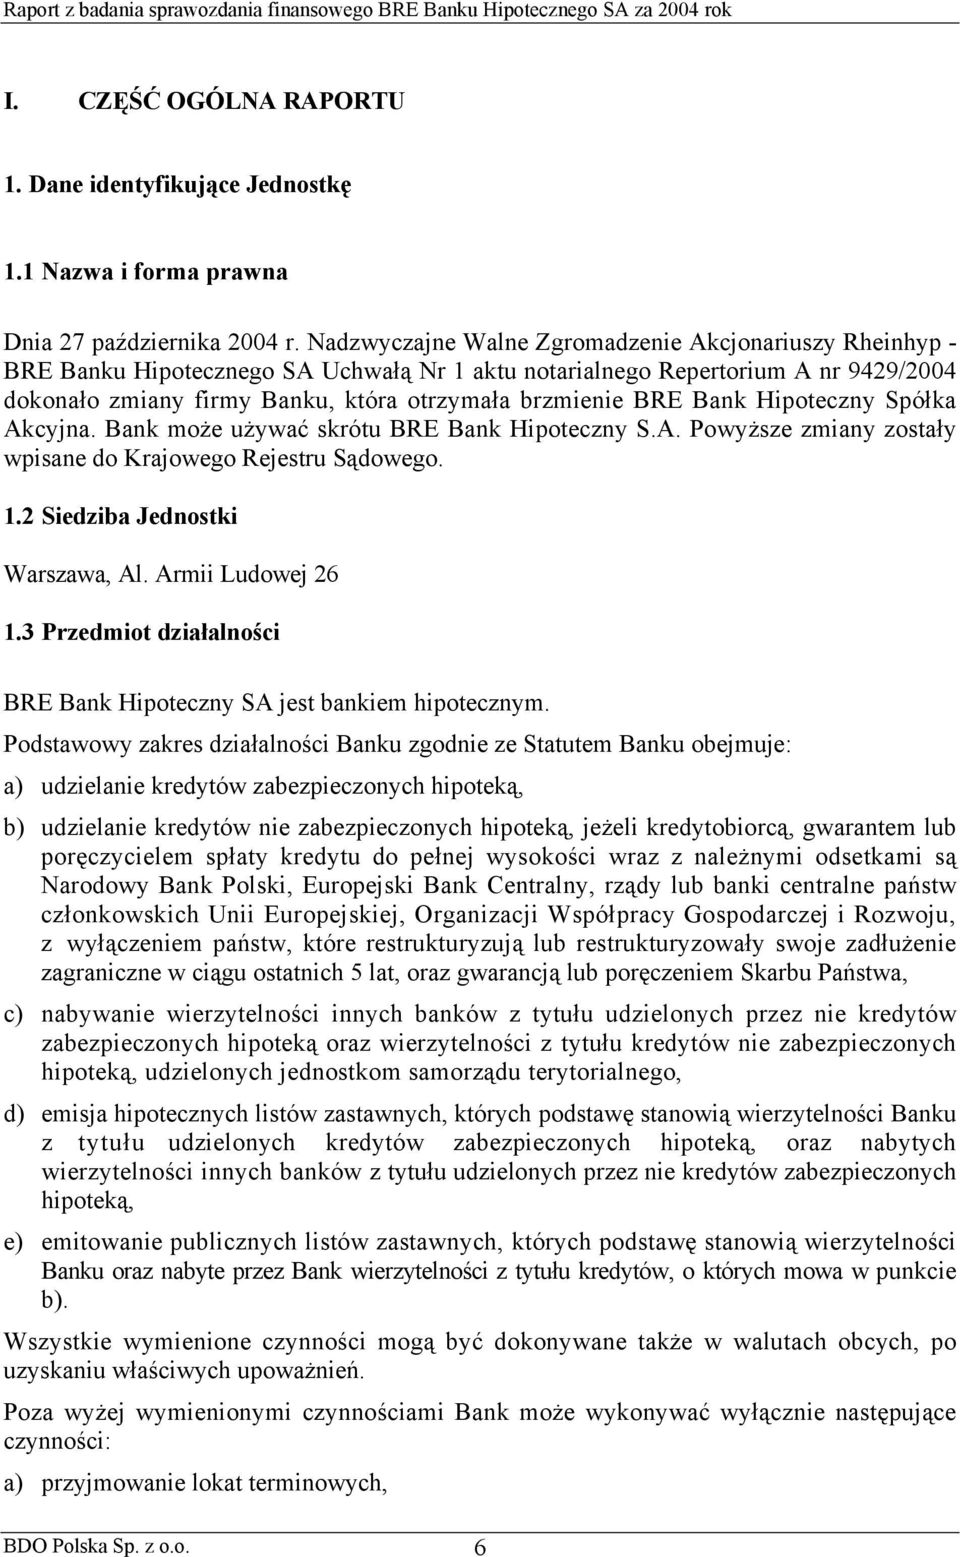 Bank Hipoteczny Spółka Akcyjna. Bank może używać skrótu BRE Bank Hipoteczny S.A. Powyższe zmiany zostały wpisane do Krajowego Rejestru Sądowego. 1.2 Siedziba Jednostki Warszawa, Al.